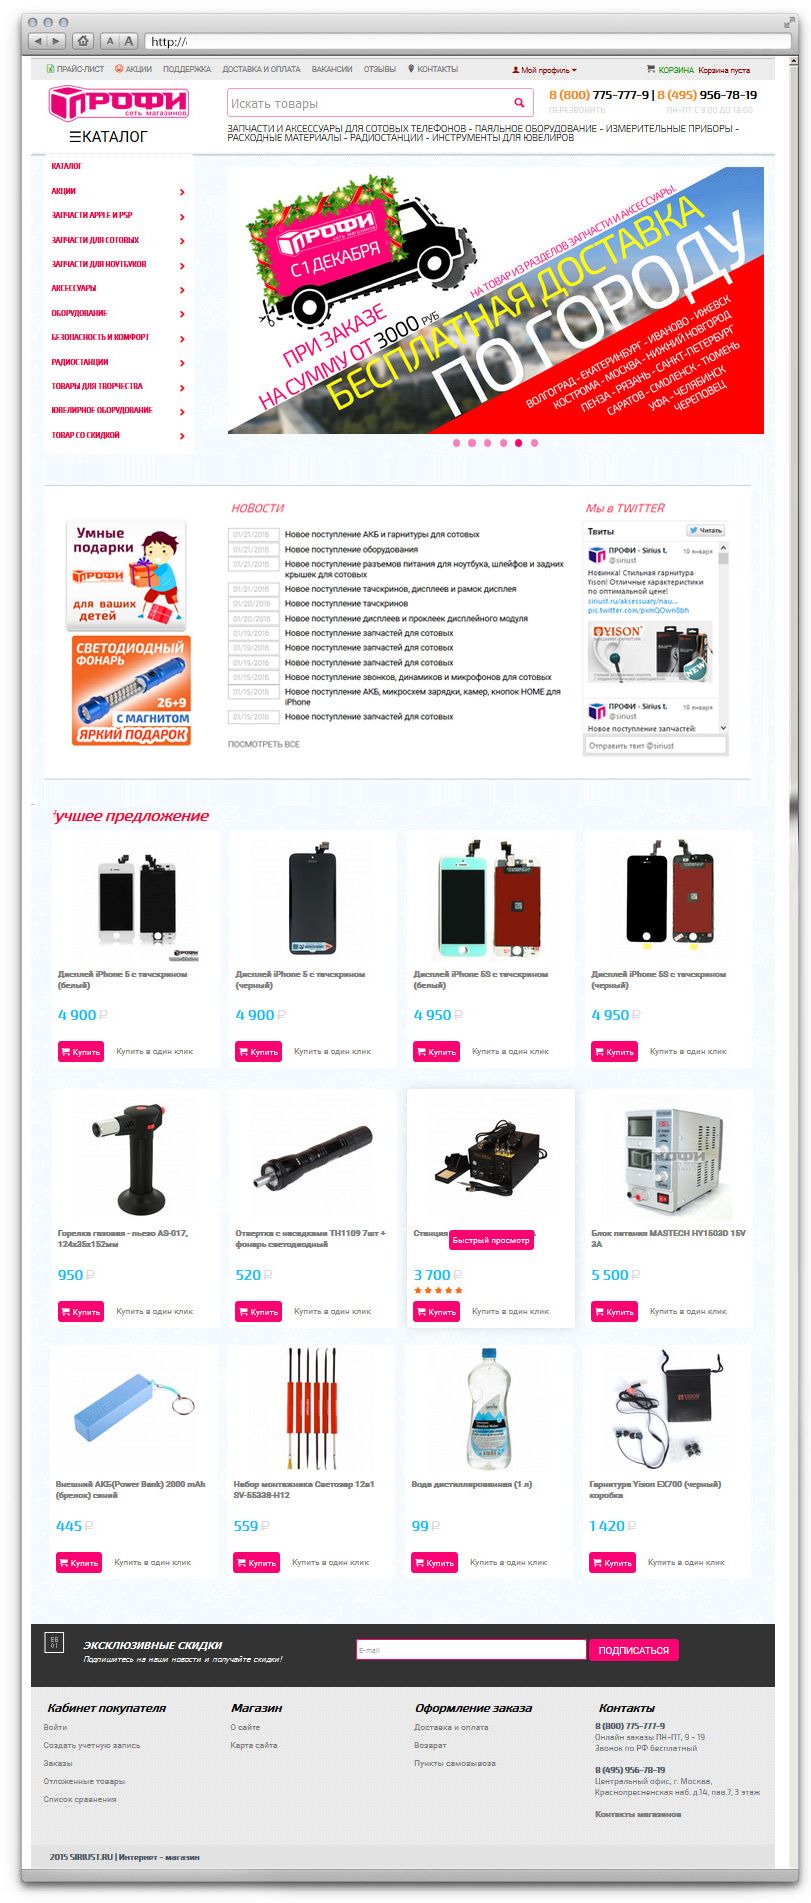 Siriust.ru - федеральная сеть магазинов по продаже запчастей для электроники.